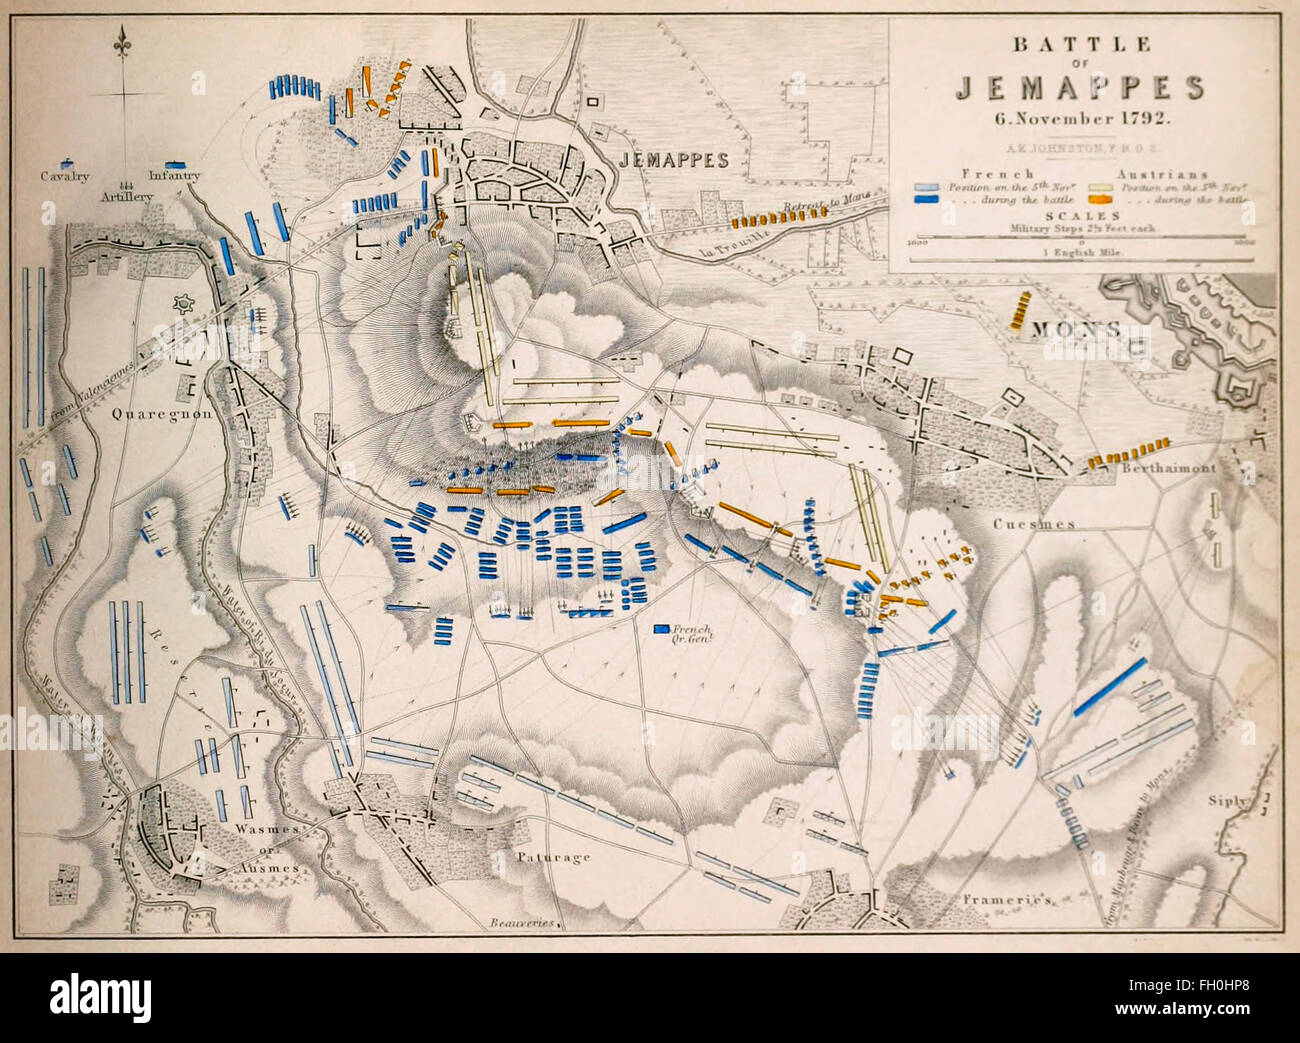 Karte der Schlacht von Jemappes (6. November 1792) fand nahe der Stadt von Jemappes im Hennegau, Belgien, in der Nähe von Mons während des ersten Koalitionskrieges, Teil von französische revolutionäre Kriege. Stockfoto